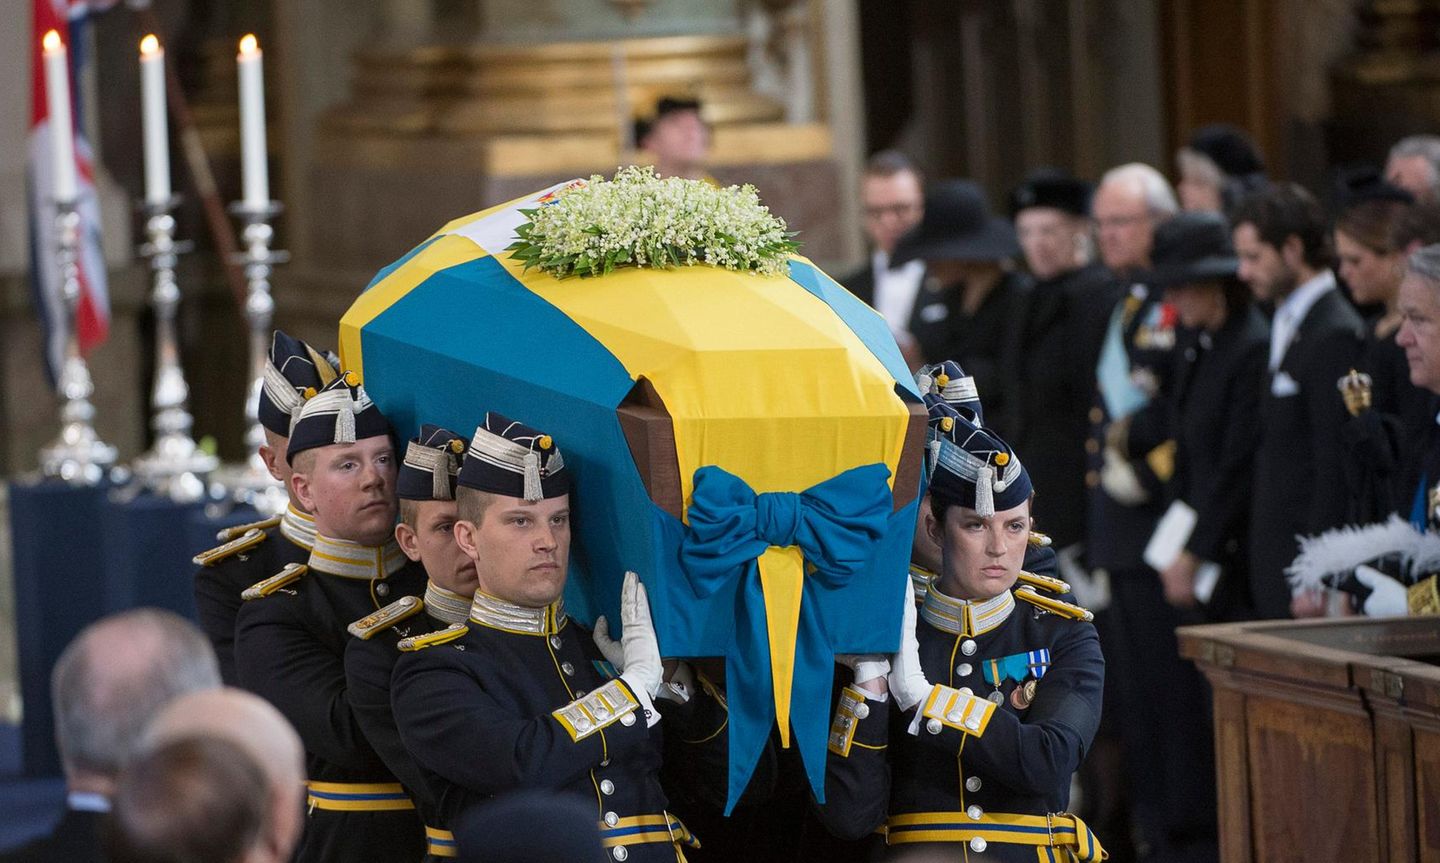 Die königliche Familie von Schweden schaut zu, während am Ende der Trauerfeier der Sarg der verstorbenen Prinzessin Lilian aus der Kirche getragen wird.